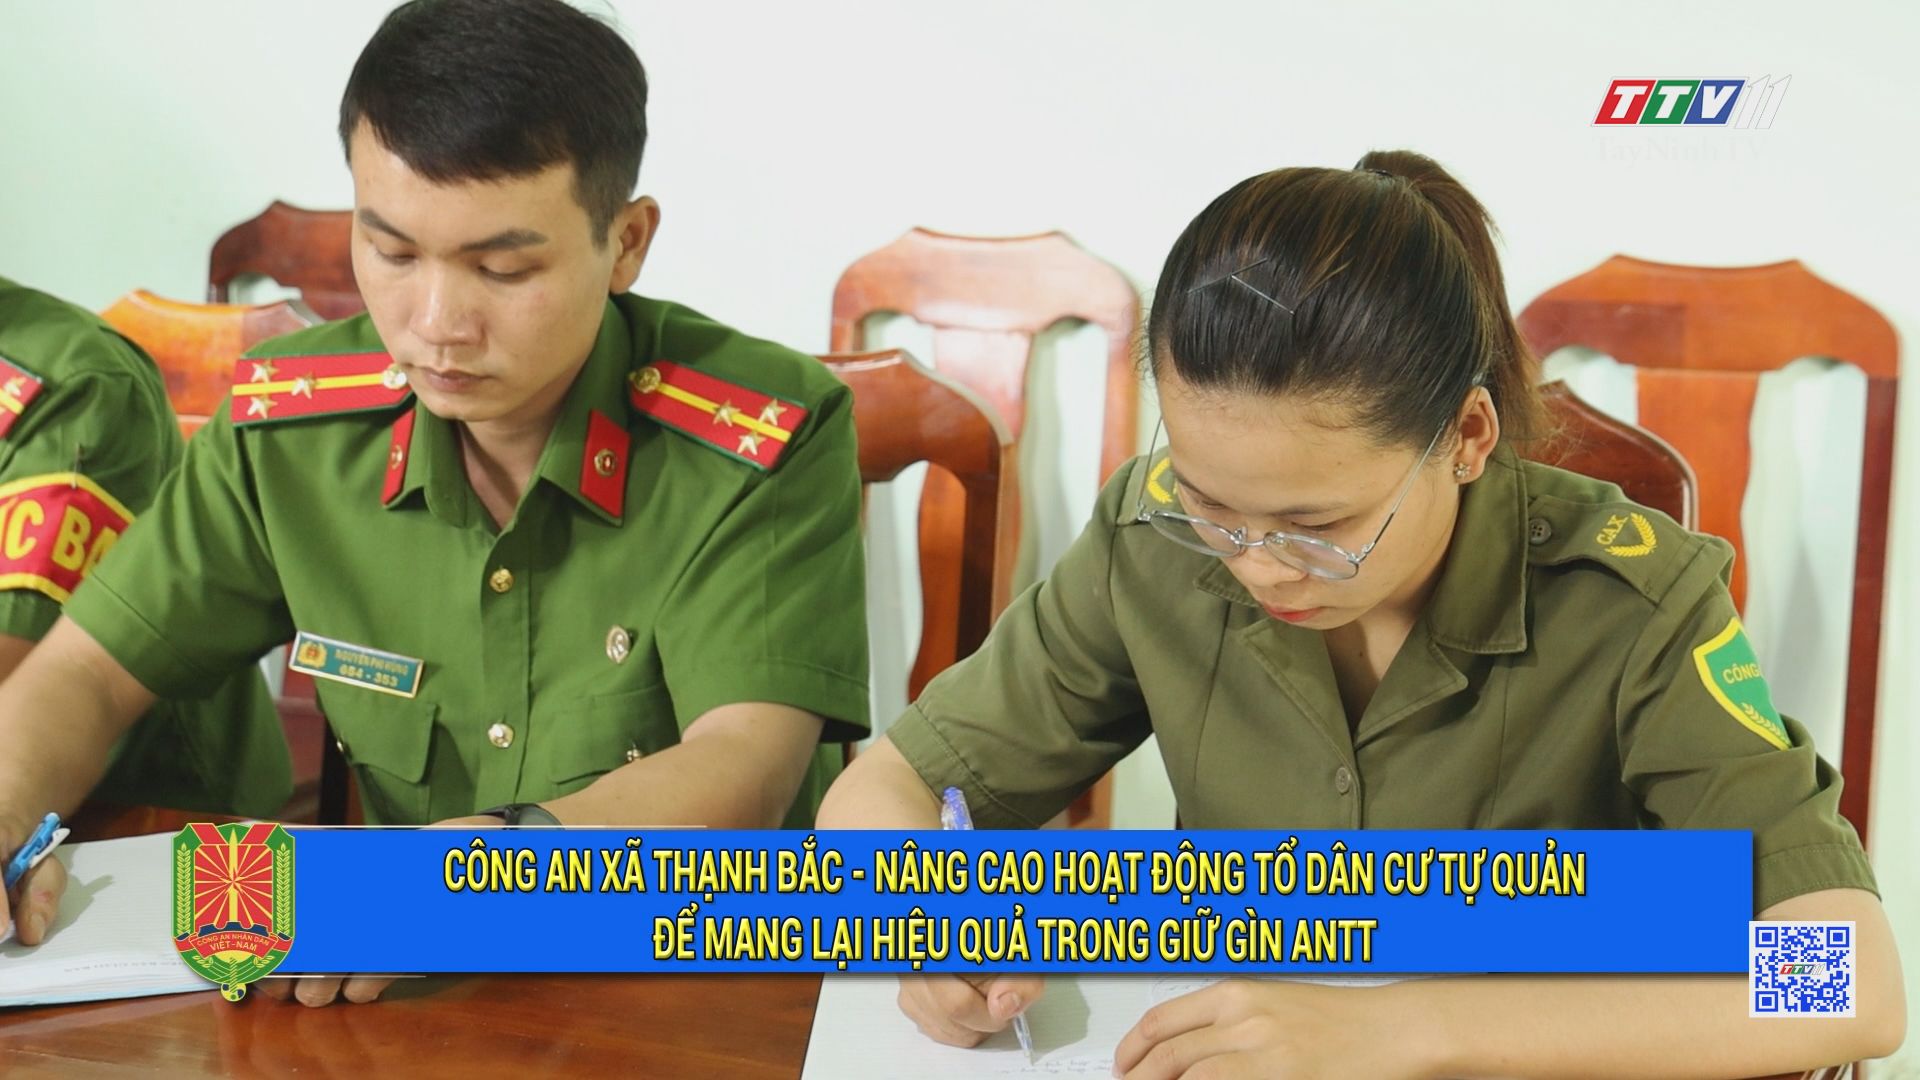 Công an xã Thạnh Bắc - Nâng cao hoạt động Tổ dân cư tự quản để mang lại hiệu quả trong giữ gìn ANTT | An ninh Tây Ninh | TayNinhTV